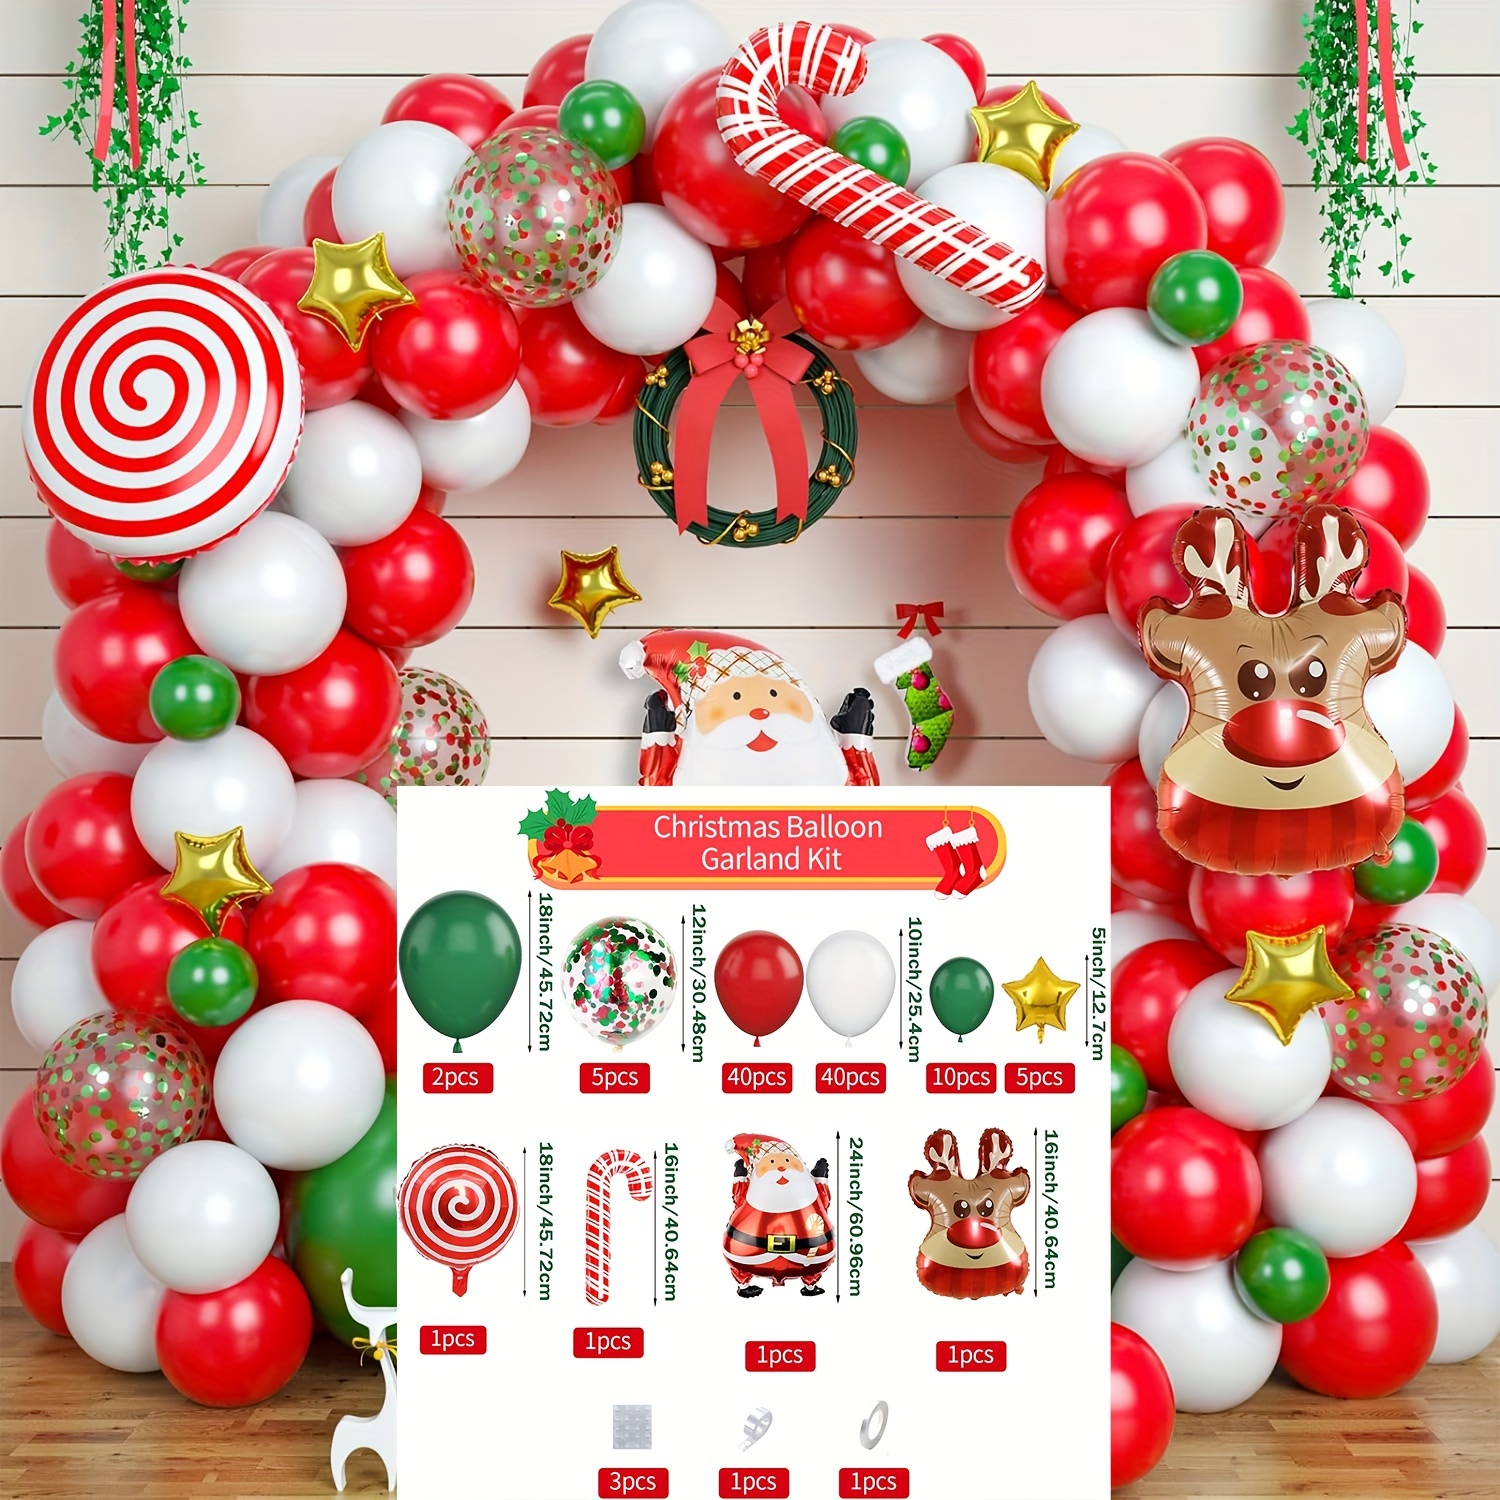 84pcs Joyeux Noël Ballon et Bâton de Père Noël 3pcs, Ballons en Latex avec  Confettis Blancs, Rouge, Vert et Or pour Décoration Noël